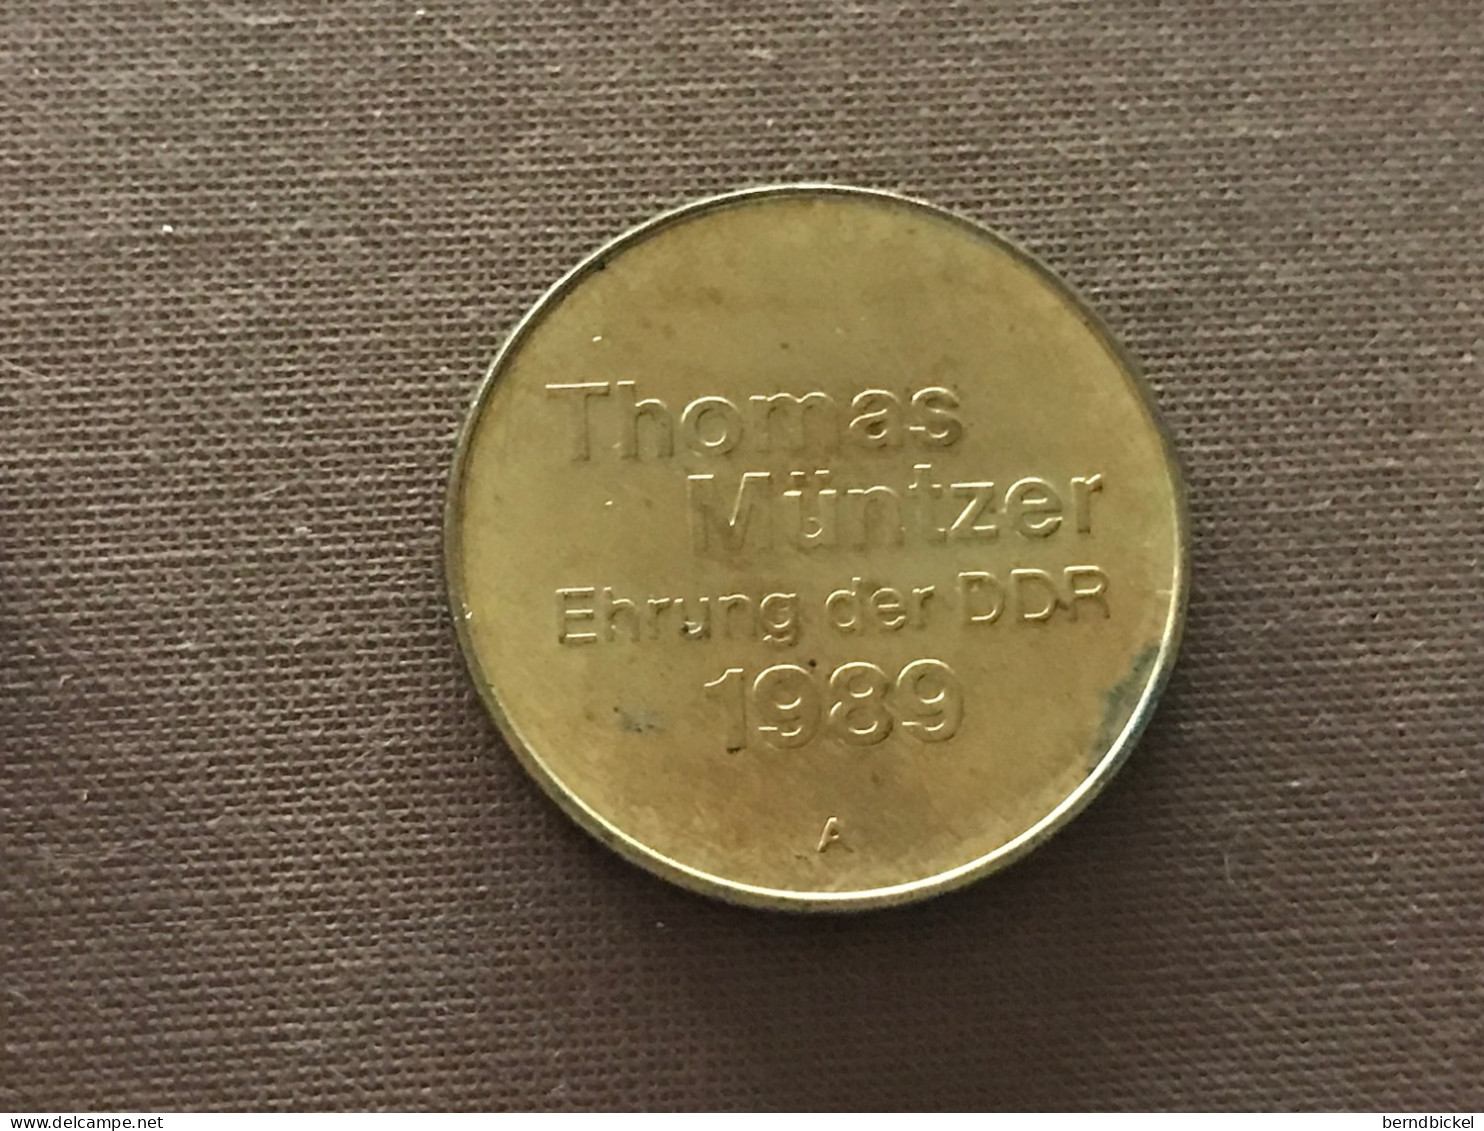 Münze Münzen Medaille DDR Thomas Müntzer Ehrung Der DDR 1989 - Monarquía/ Nobleza